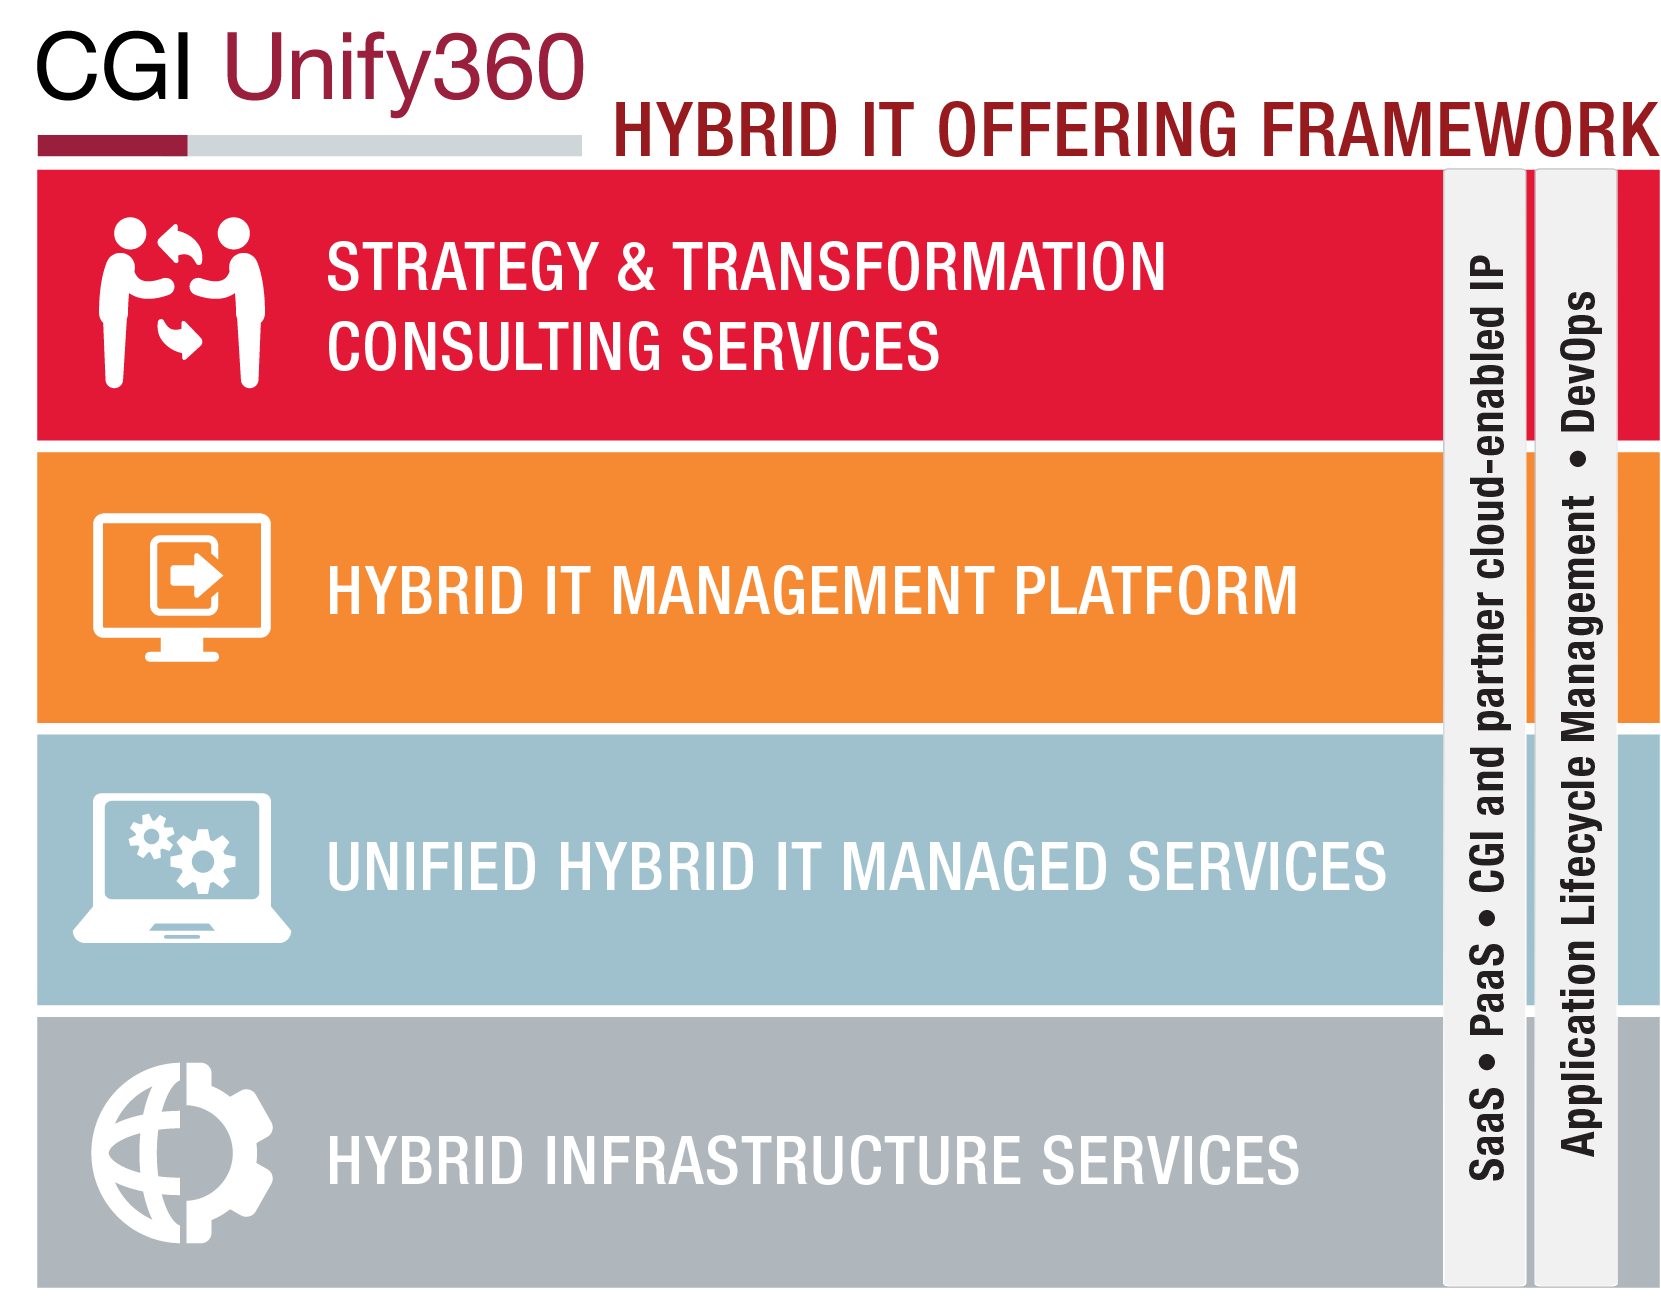 CGI Unify360 framework